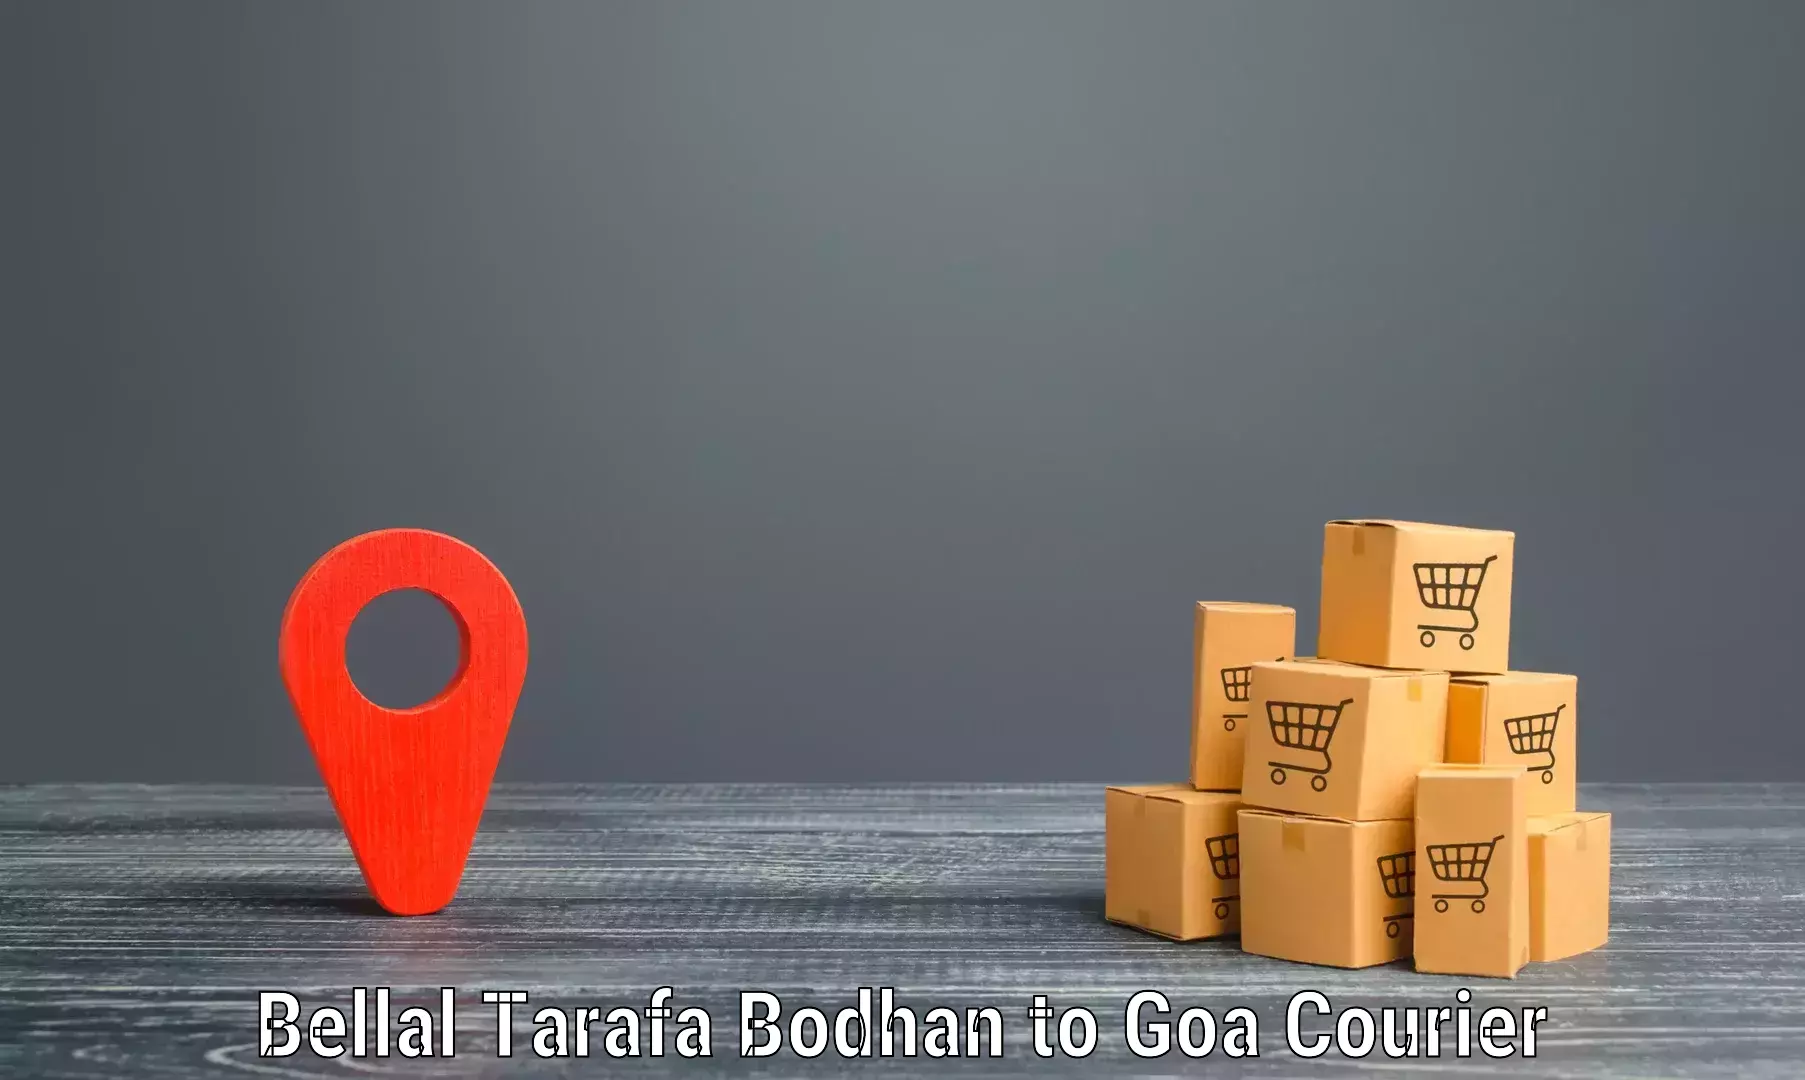 Express delivery network Bellal Tarafa Bodhan to Panjim